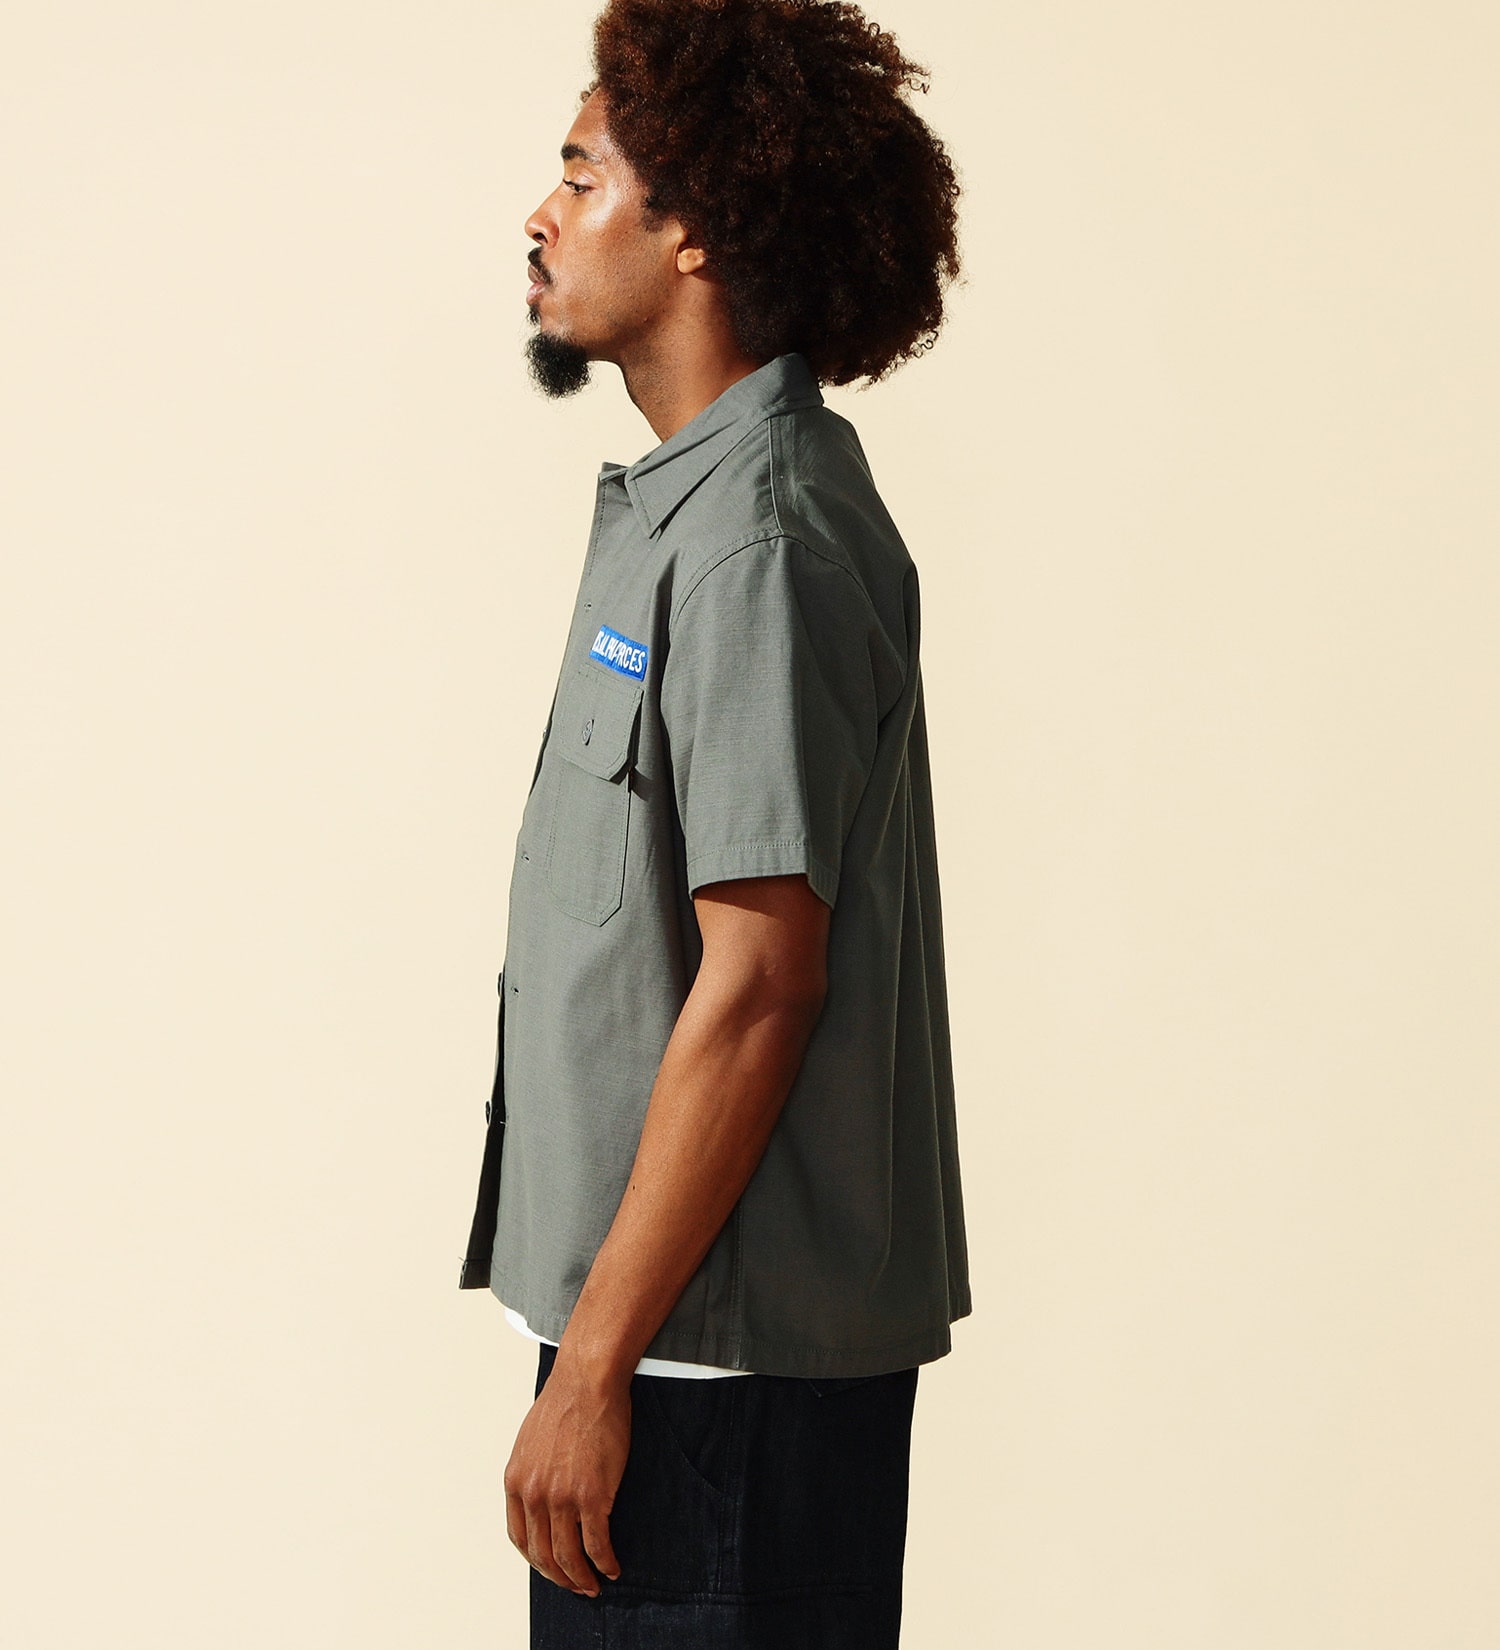 ALPHA(アルファ)のユーティリティパッチドシャツ 半袖|トップス/シャツ/ブラウス/メンズ|グレー